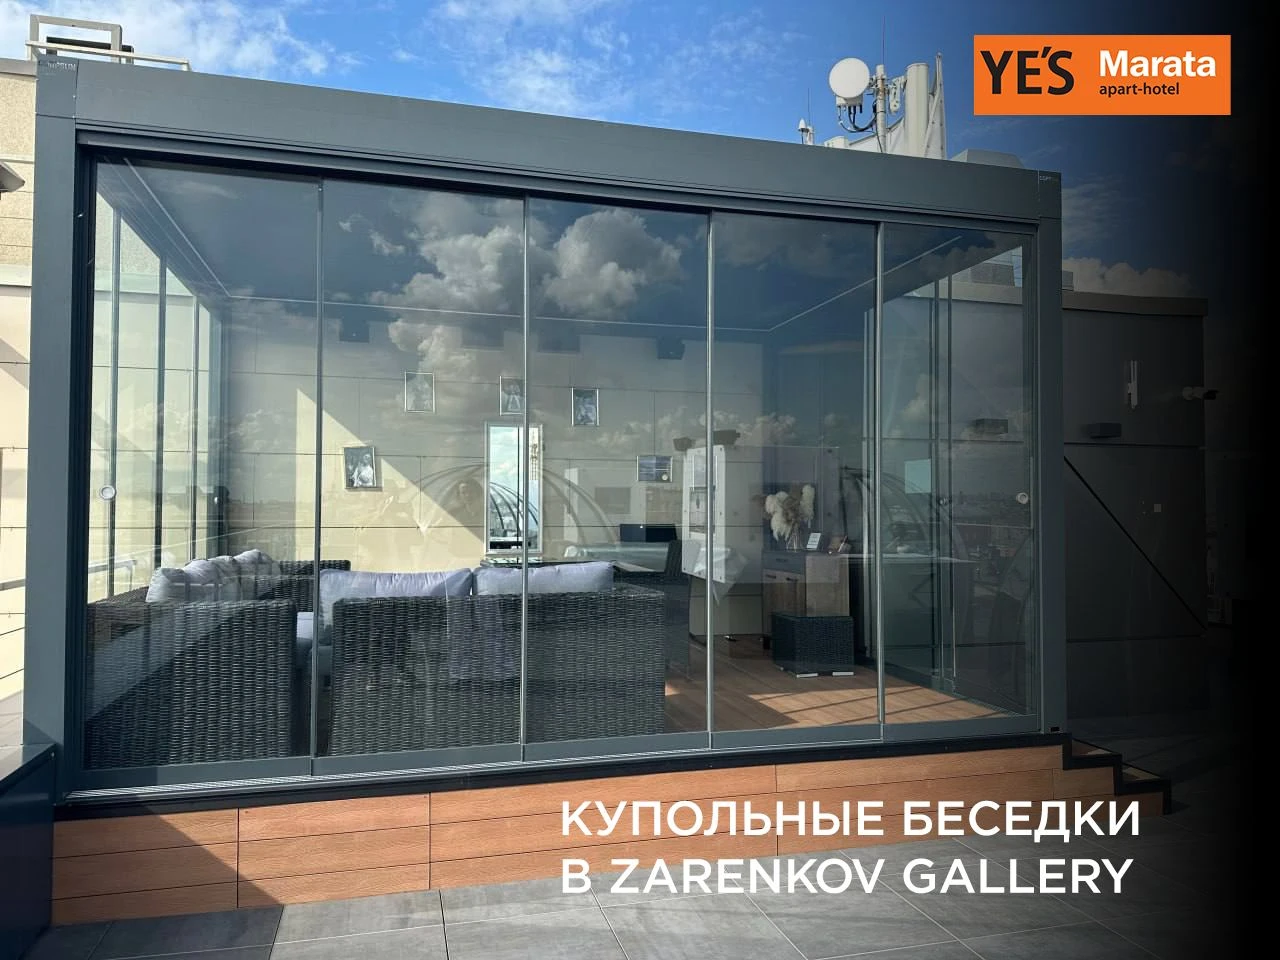 Купольные беседки для гостей Zarenkov Gallery